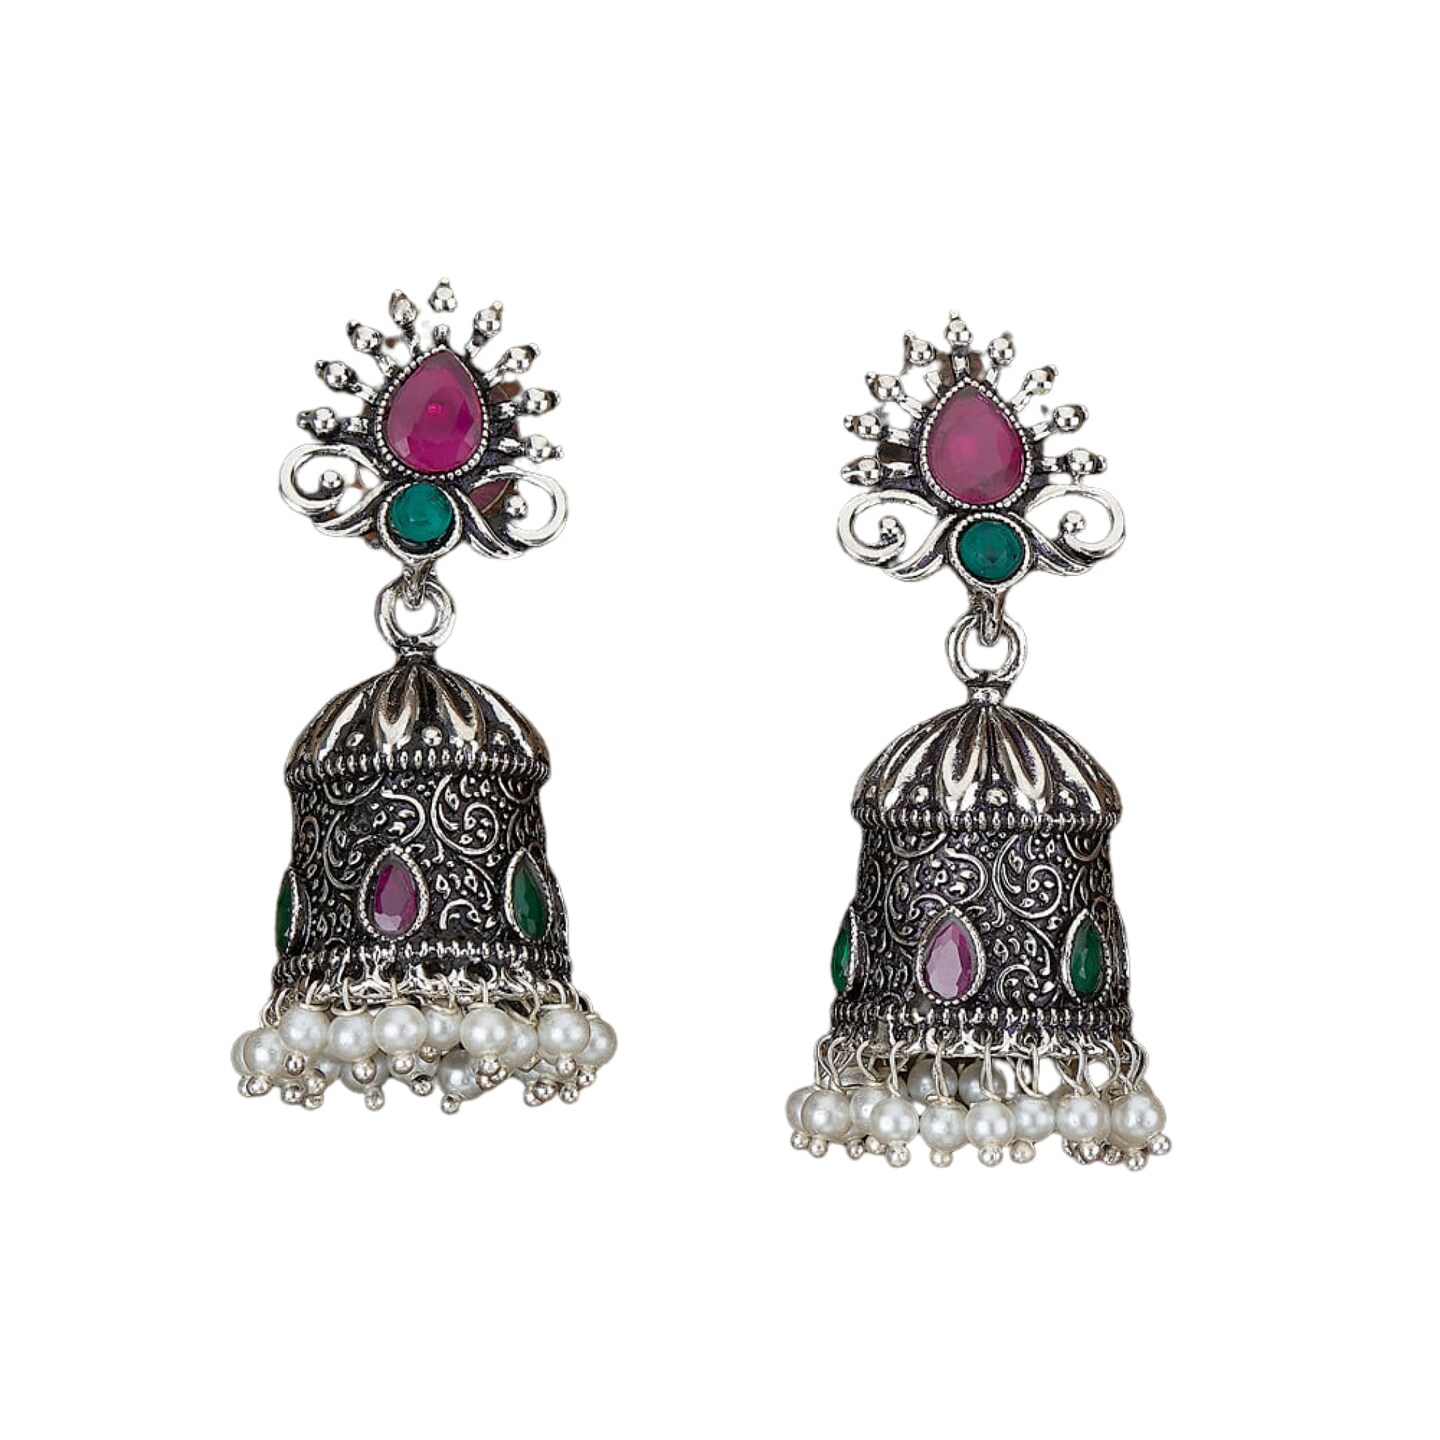 Buy Jhumka Earrings Kundan Work Pearl Gold Studded Meenakari Danglers  Indian Pakistani Ethnic Jewelry Jewellery Danglers Online in India - Etsy